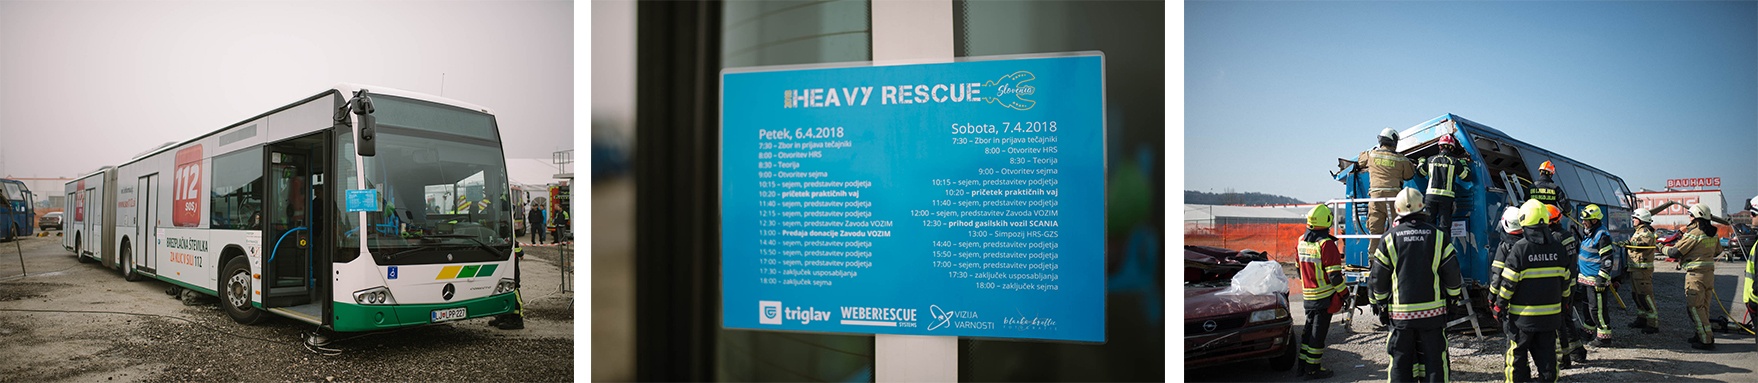 Heavy Rescue Slovenia - bus (1)